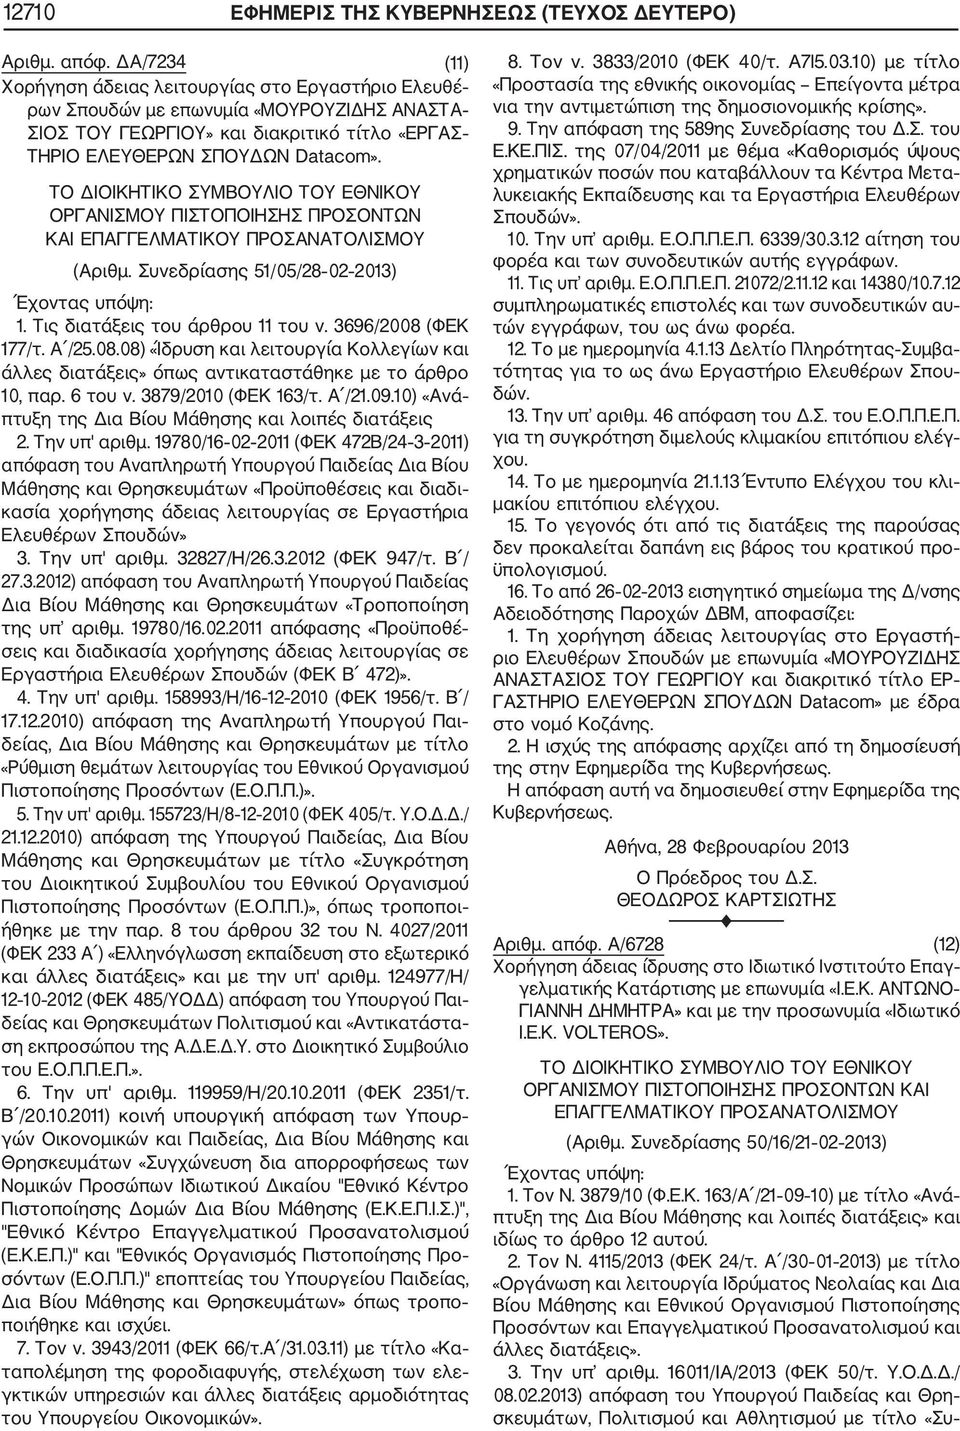 ΟΡΓΑΝΙΣΜΟΥ ΠΙΣΤΟΠΟΙΗΣΗΣ ΠΡΟΣΟΝΤΩΝ ΚΑΙ ΕΠΑΓΓΕΛΜΑΤΙΚΟΥ ΠΡΟΣΑΝΑΤΟΛΙΣΜΟΥ (Αριθμ. Συνεδρίασης 51/05/28 02 2013) 1. Τις διατάξεις του άρθρου 11 του ν. 3696/2008 